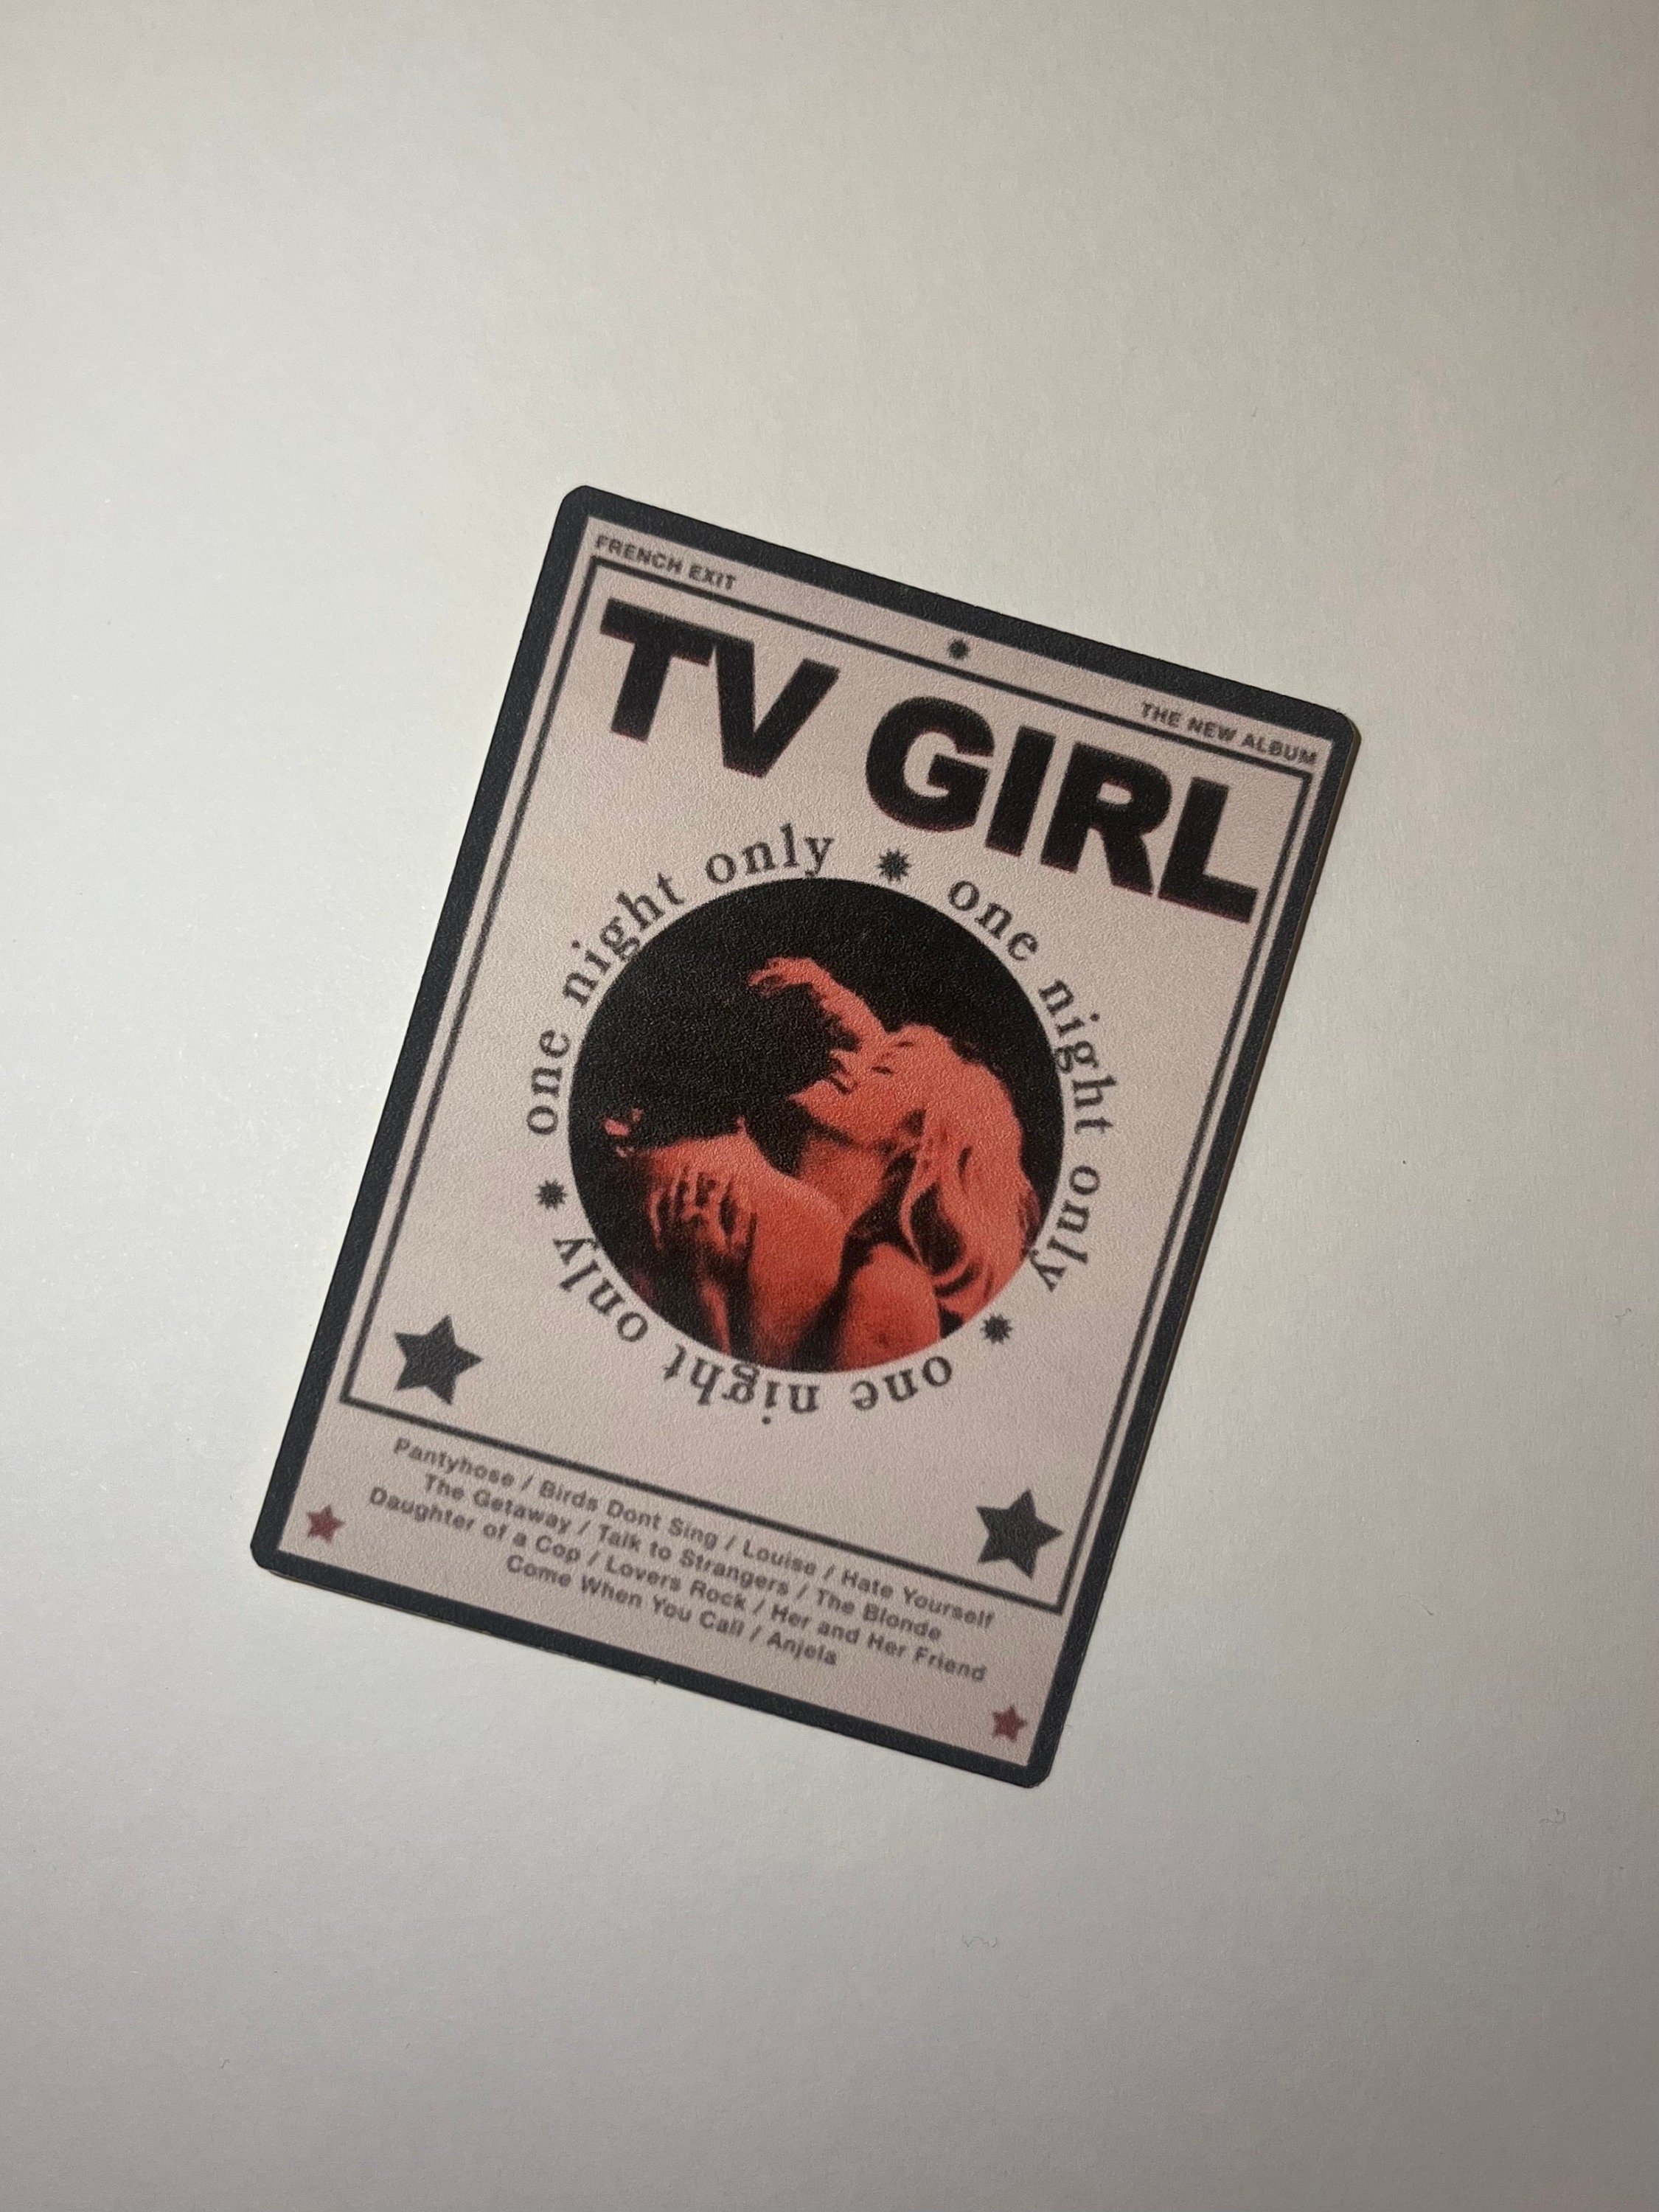 Tv Girl Sticker, Tv Girl French Exit Sticker, Tv Girl Merch, Tv Girl Tour,  Music Sticker 